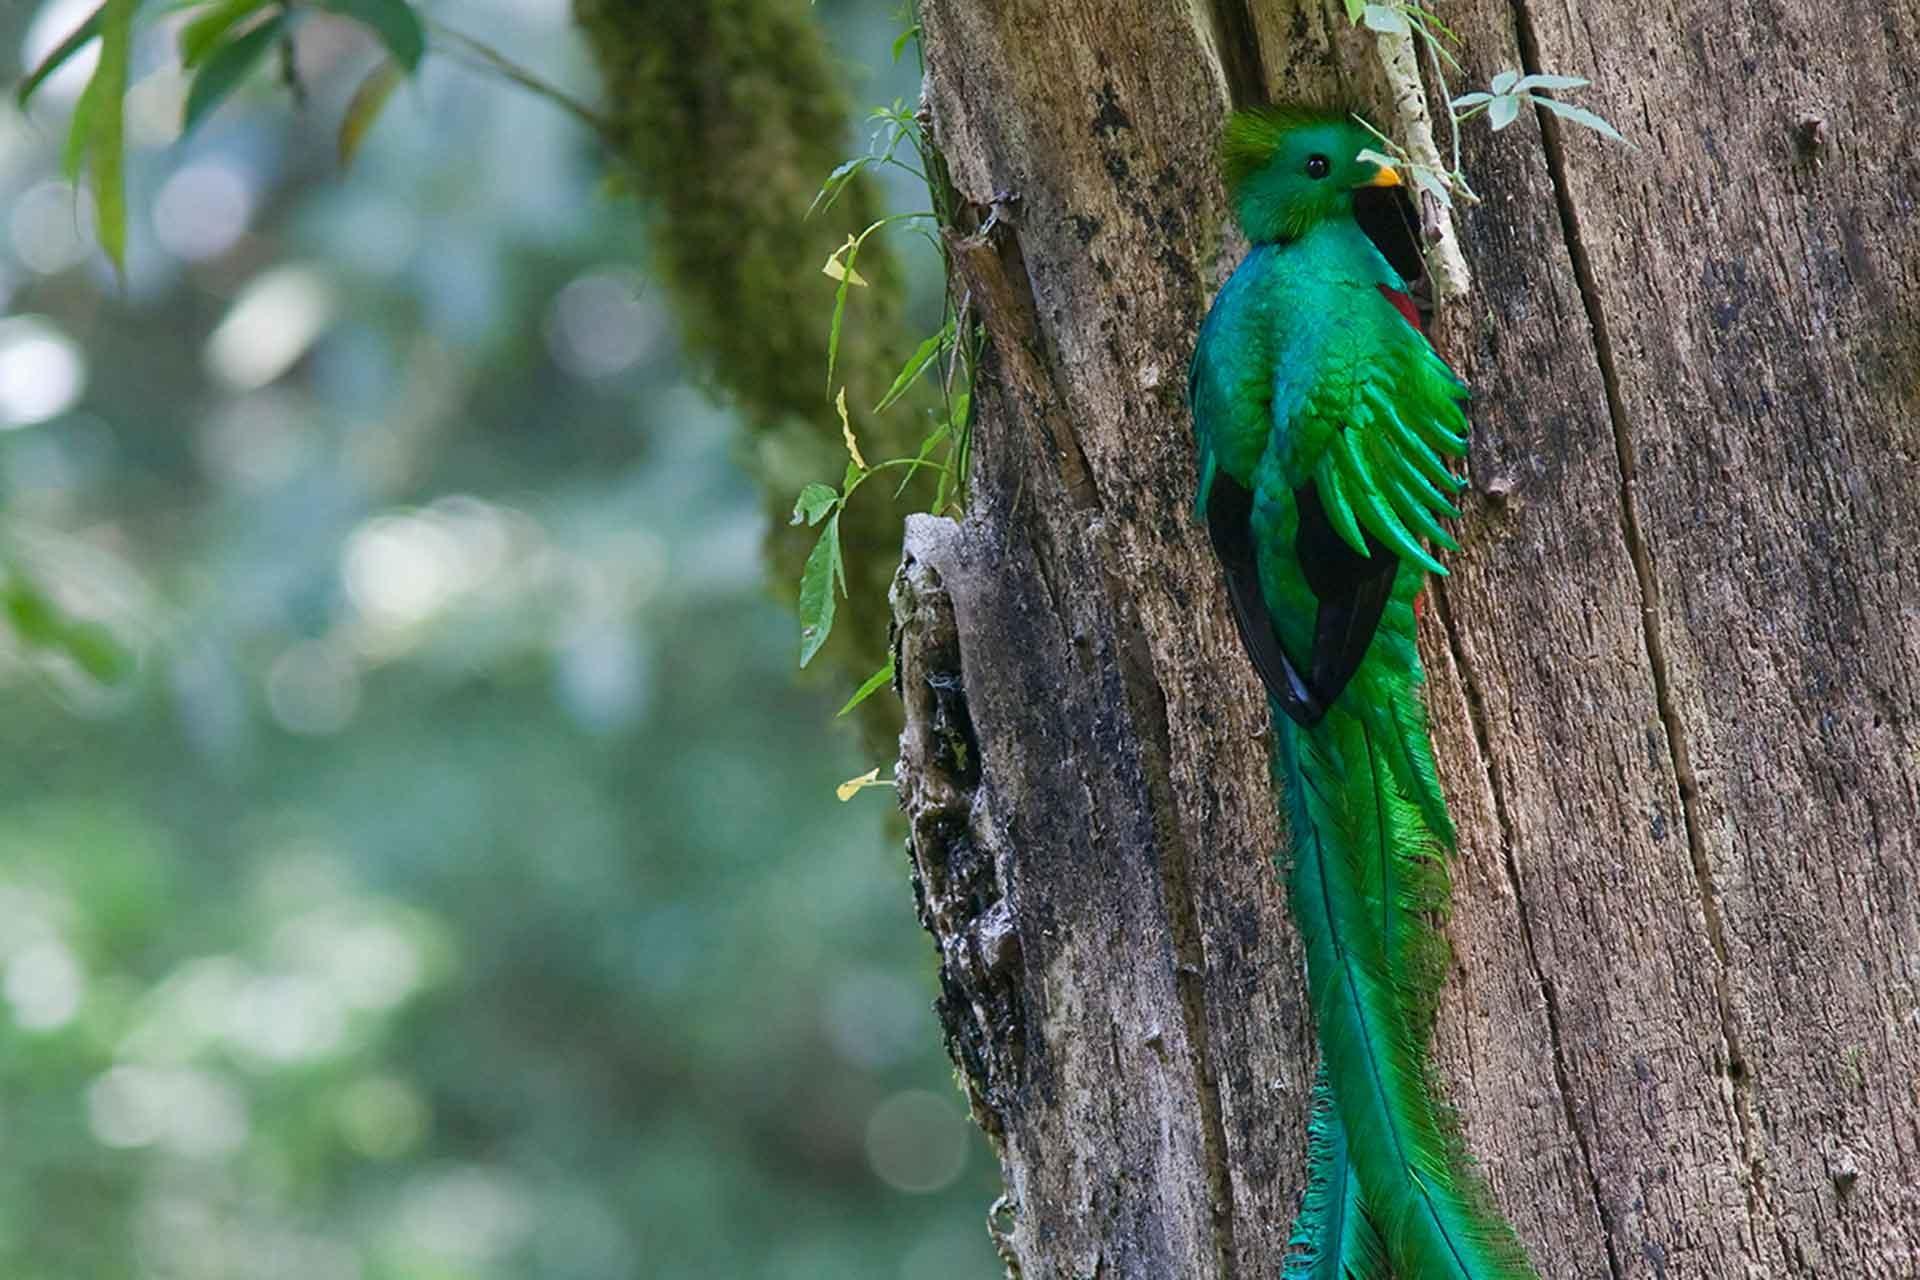 A Resplendent quetzal male